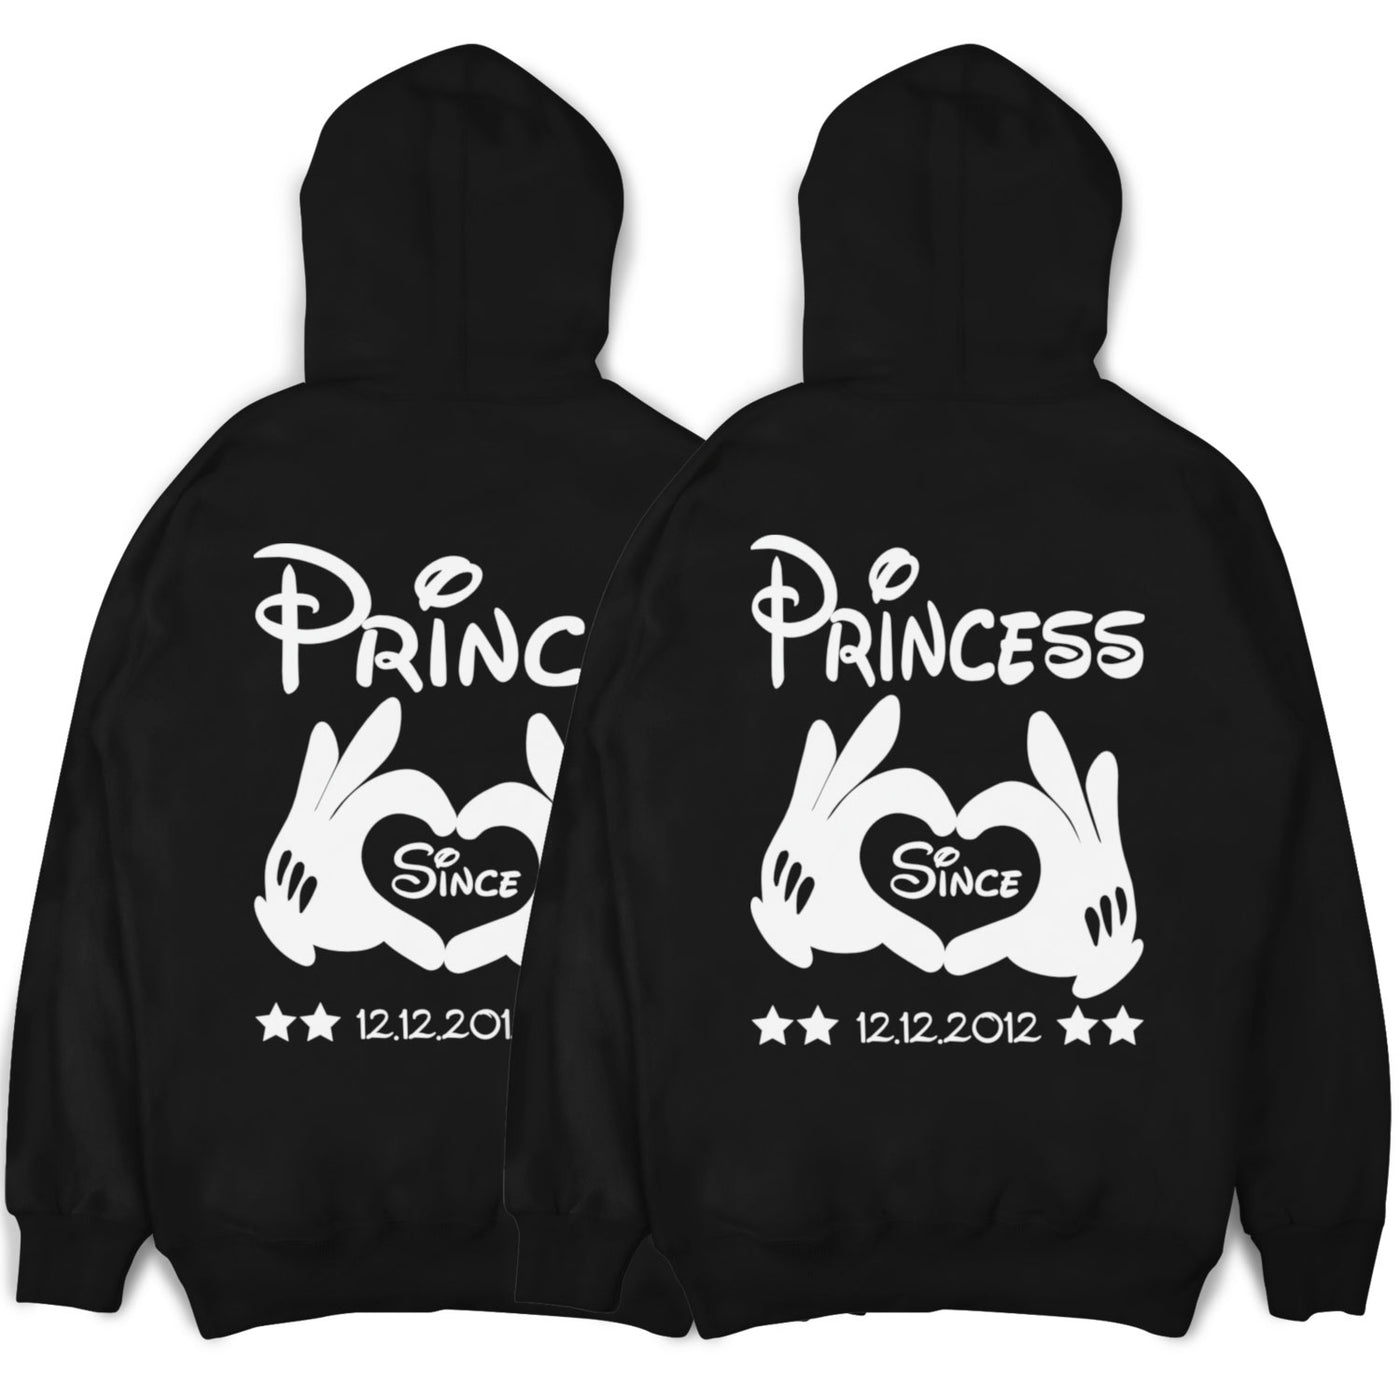 prince-princess-hoodie-black-ft108hod